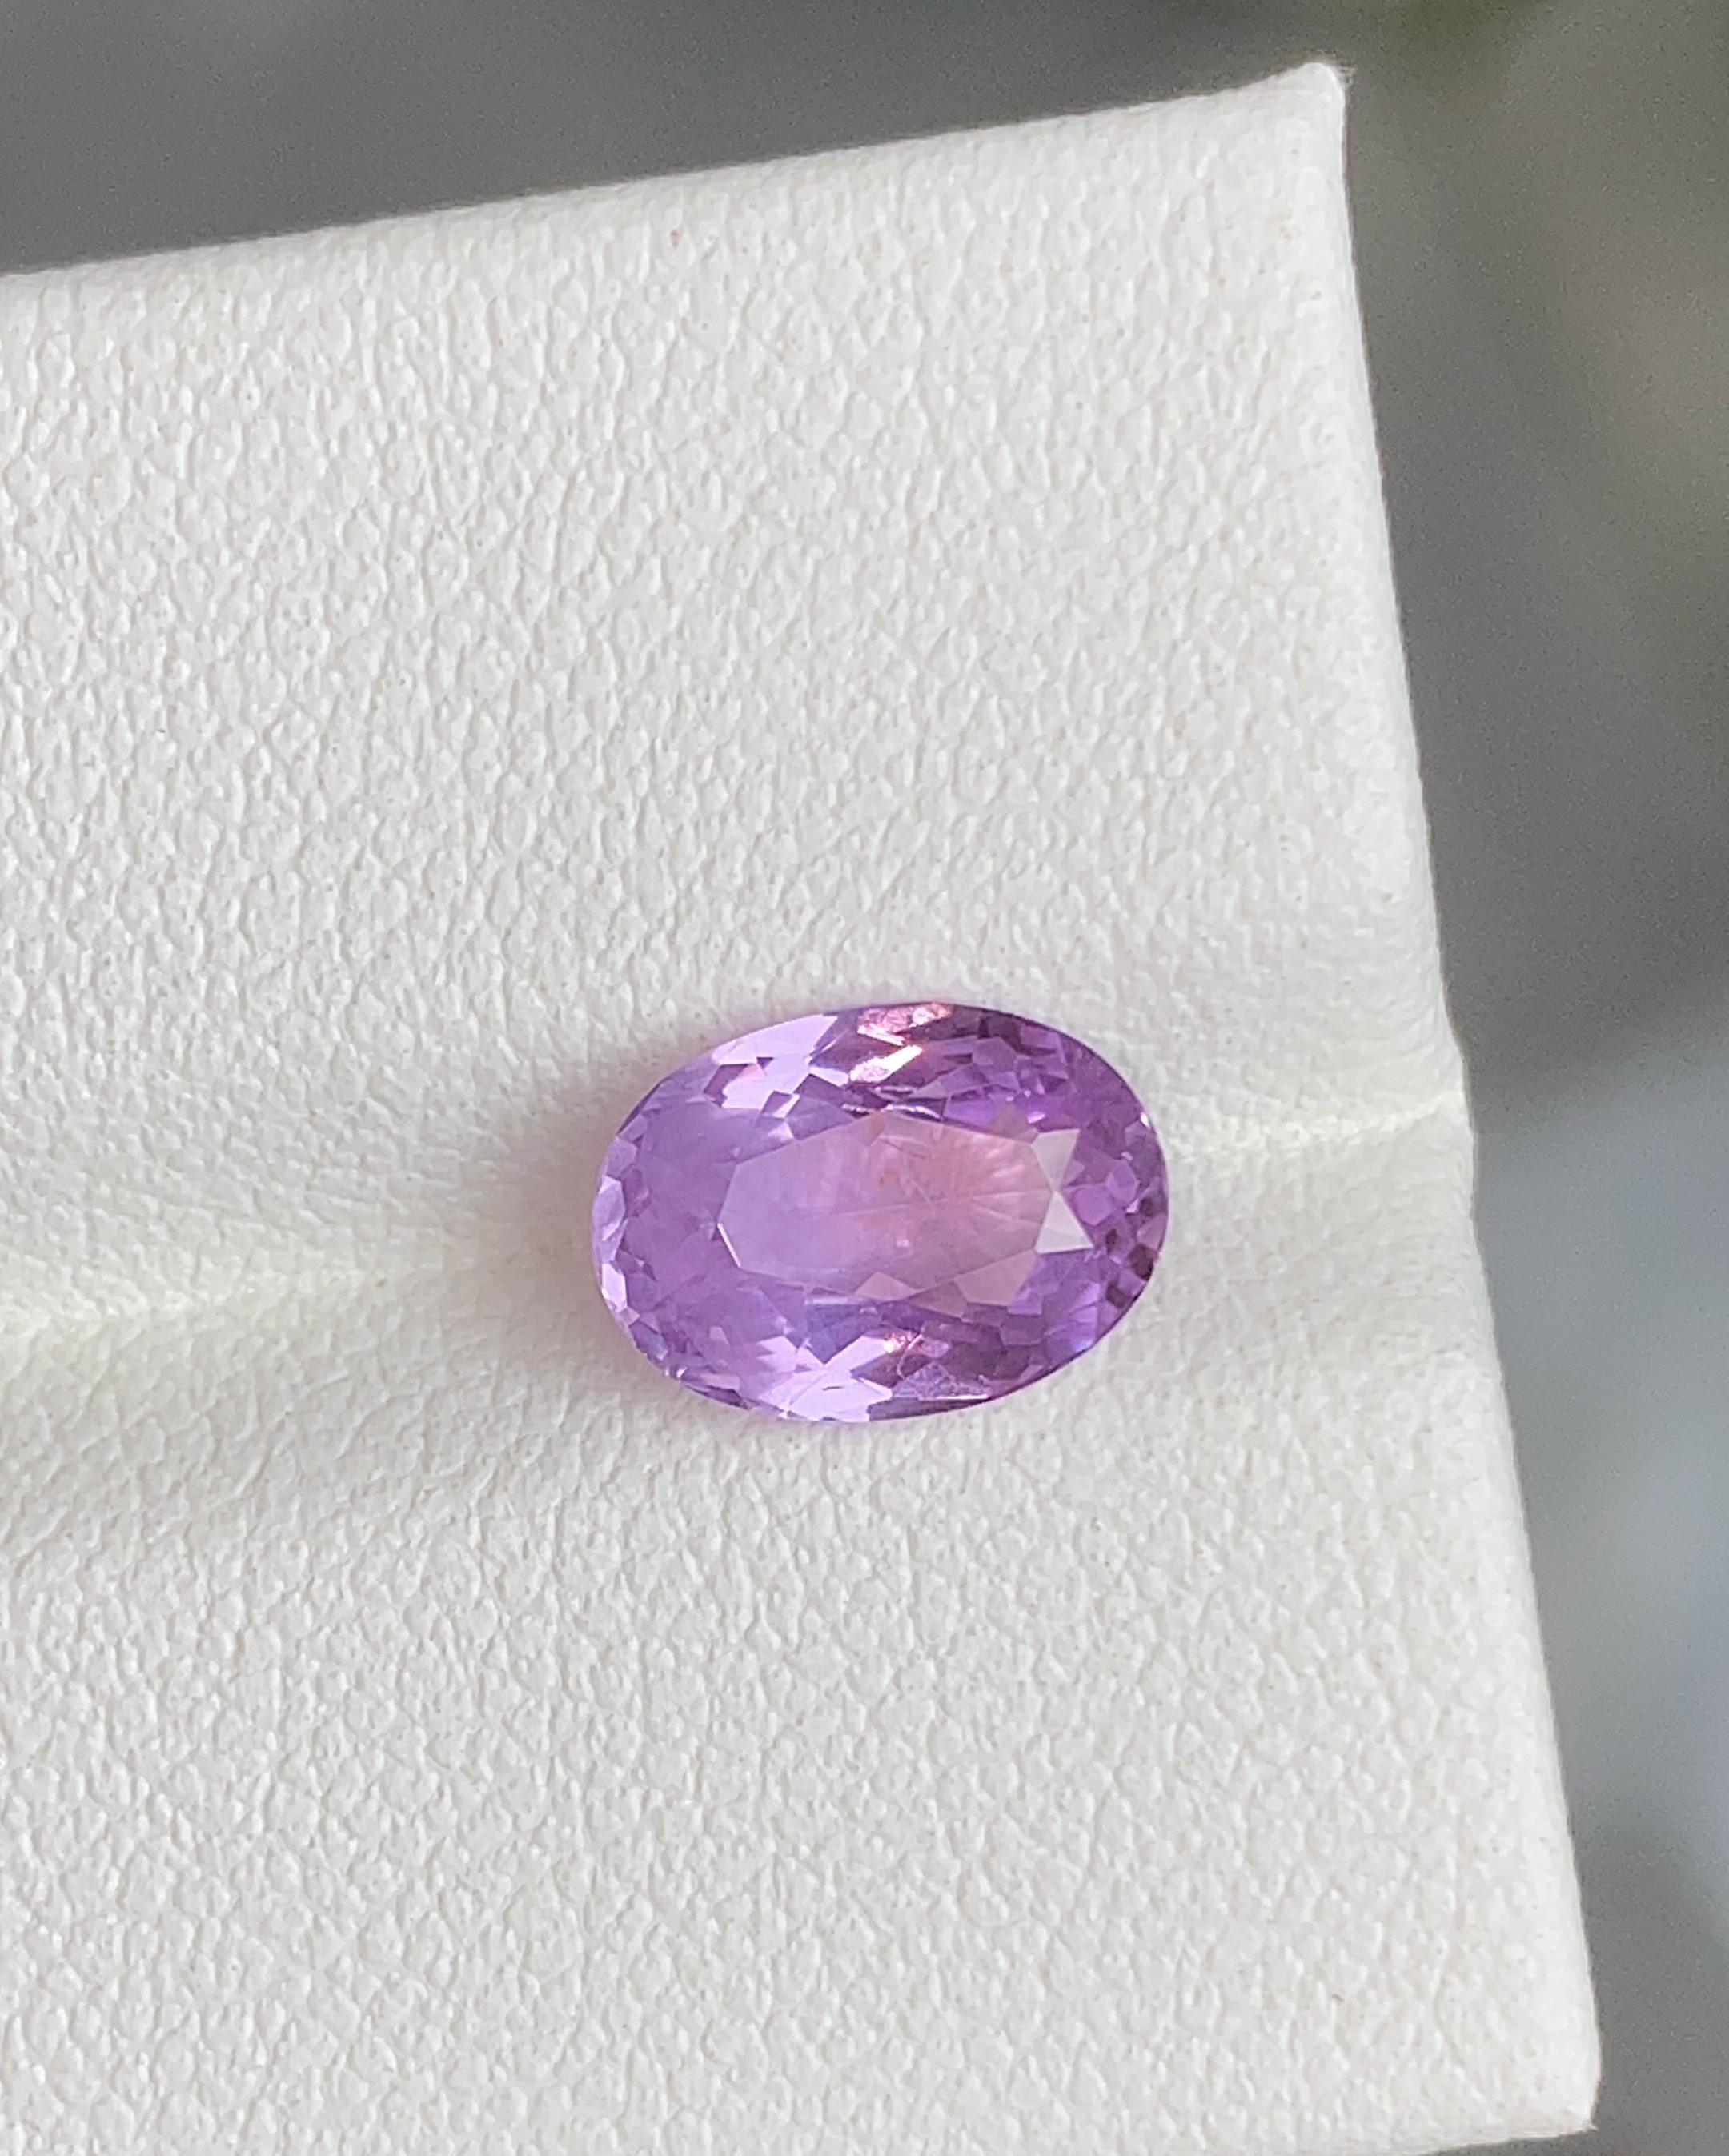 Saphir violet de Ceylan 2.10 Carats non chauffé, de couleur violet, avec un lustre et une coupe parfaite, non chauffé. 

• Variété : Sapphire
• Origine : Sri Lanka (Ceylan)
• Couleur(s) : Violet
• Forme et style de coupe : Ovale
• Dimensions : 10,8